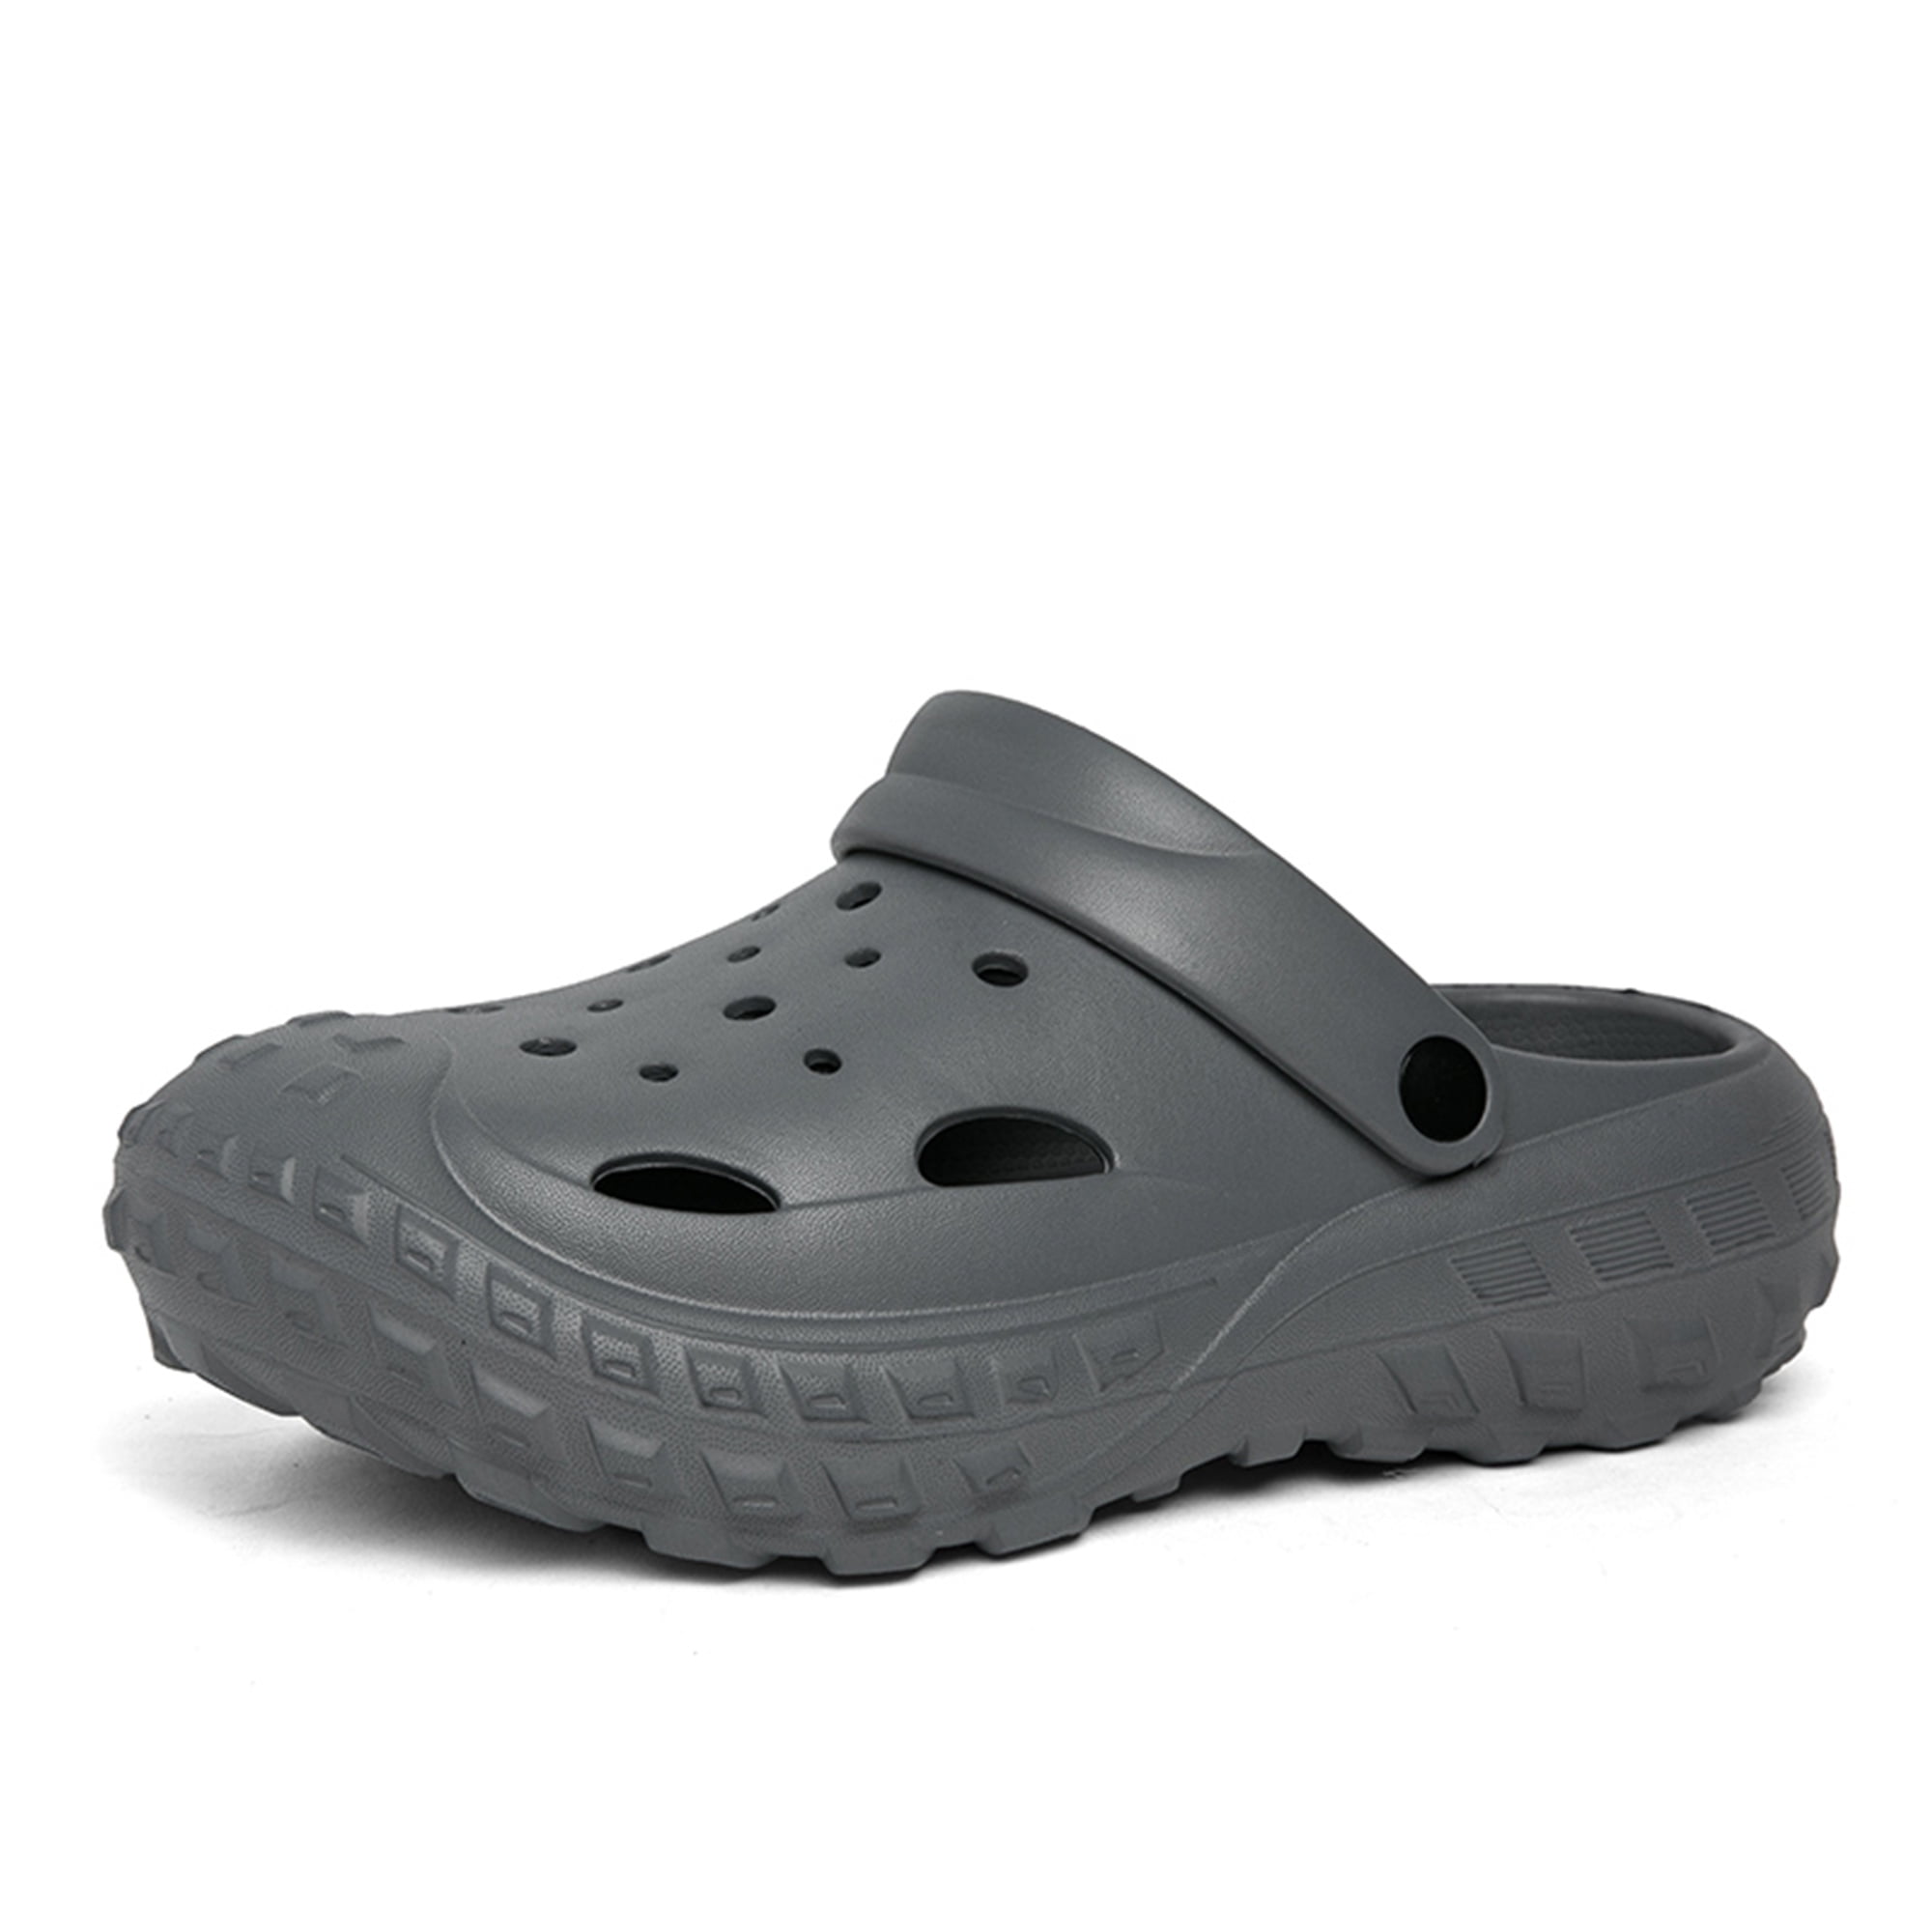 JACKSHIBO Thick Sole Cloud Slides Sandals Unisex Garden Clogs Shoes ...